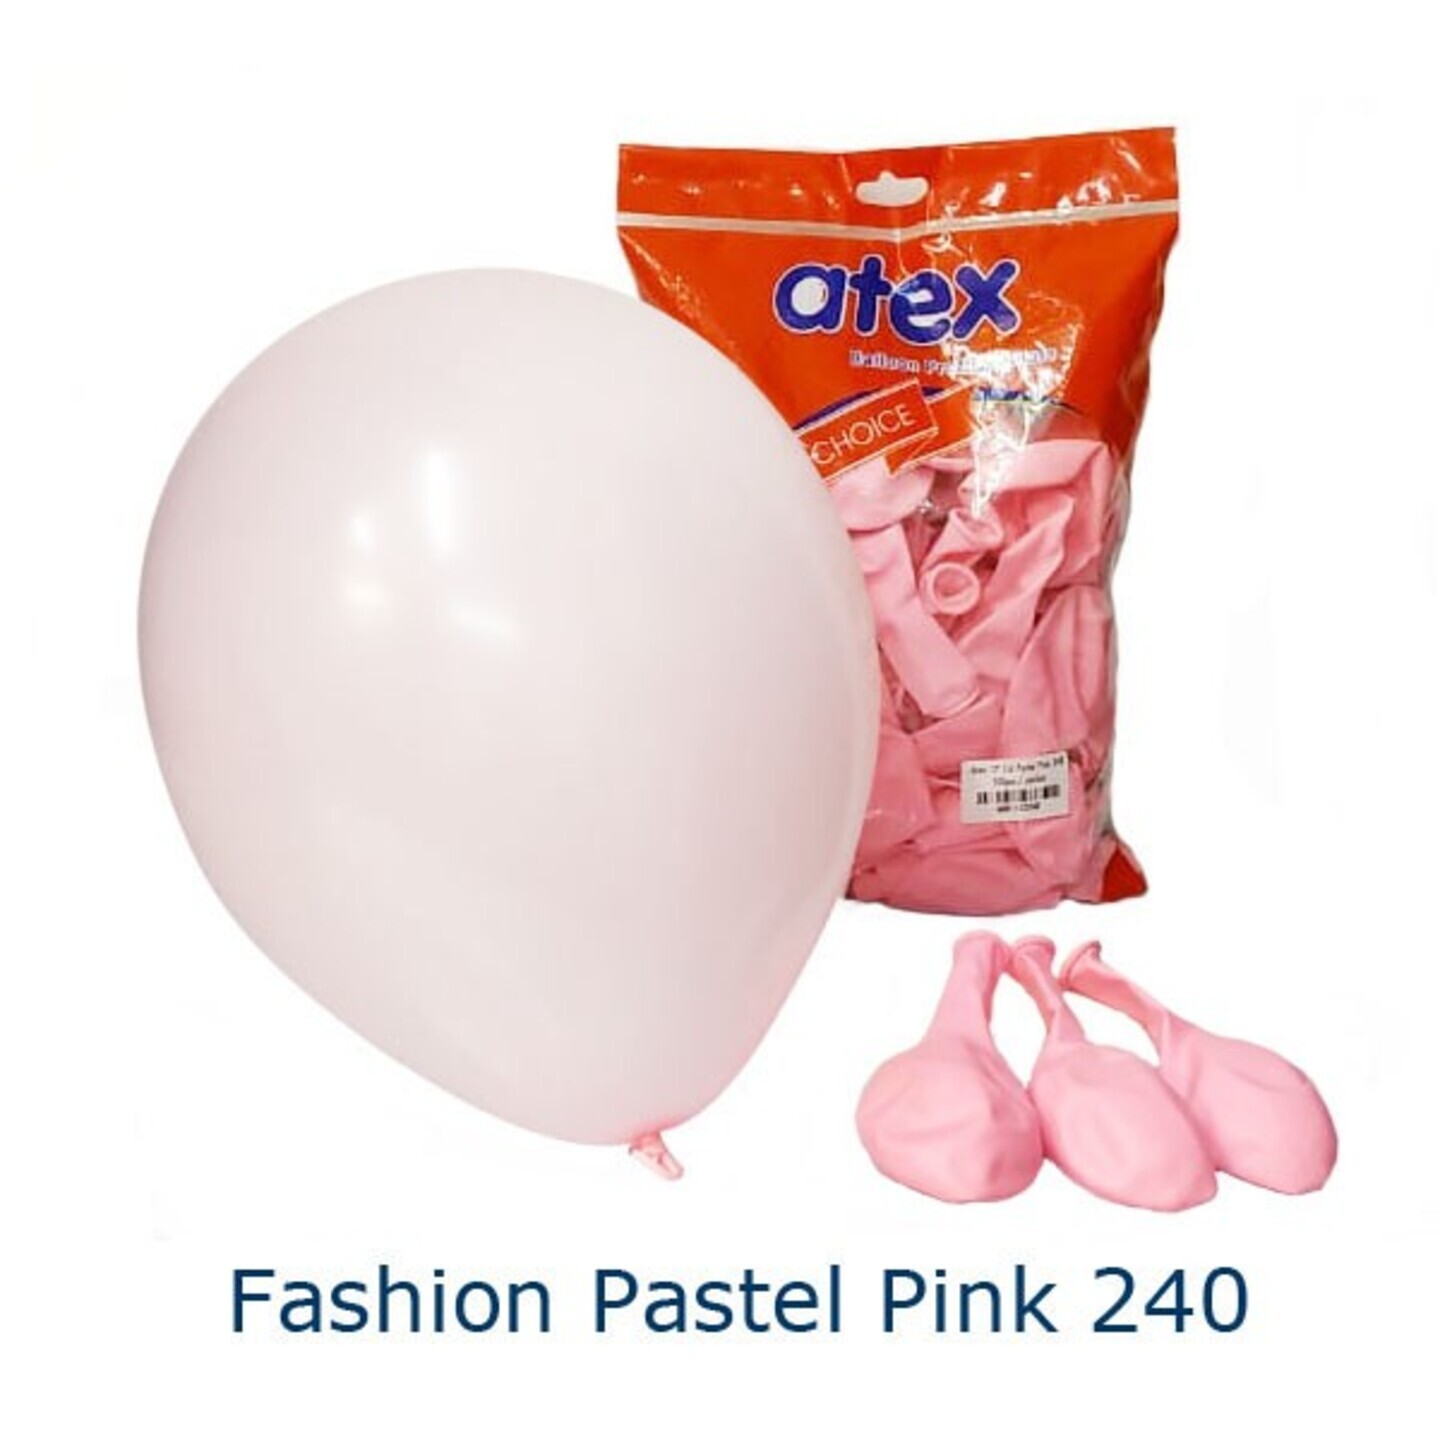 Fashion Pastel Pink 240